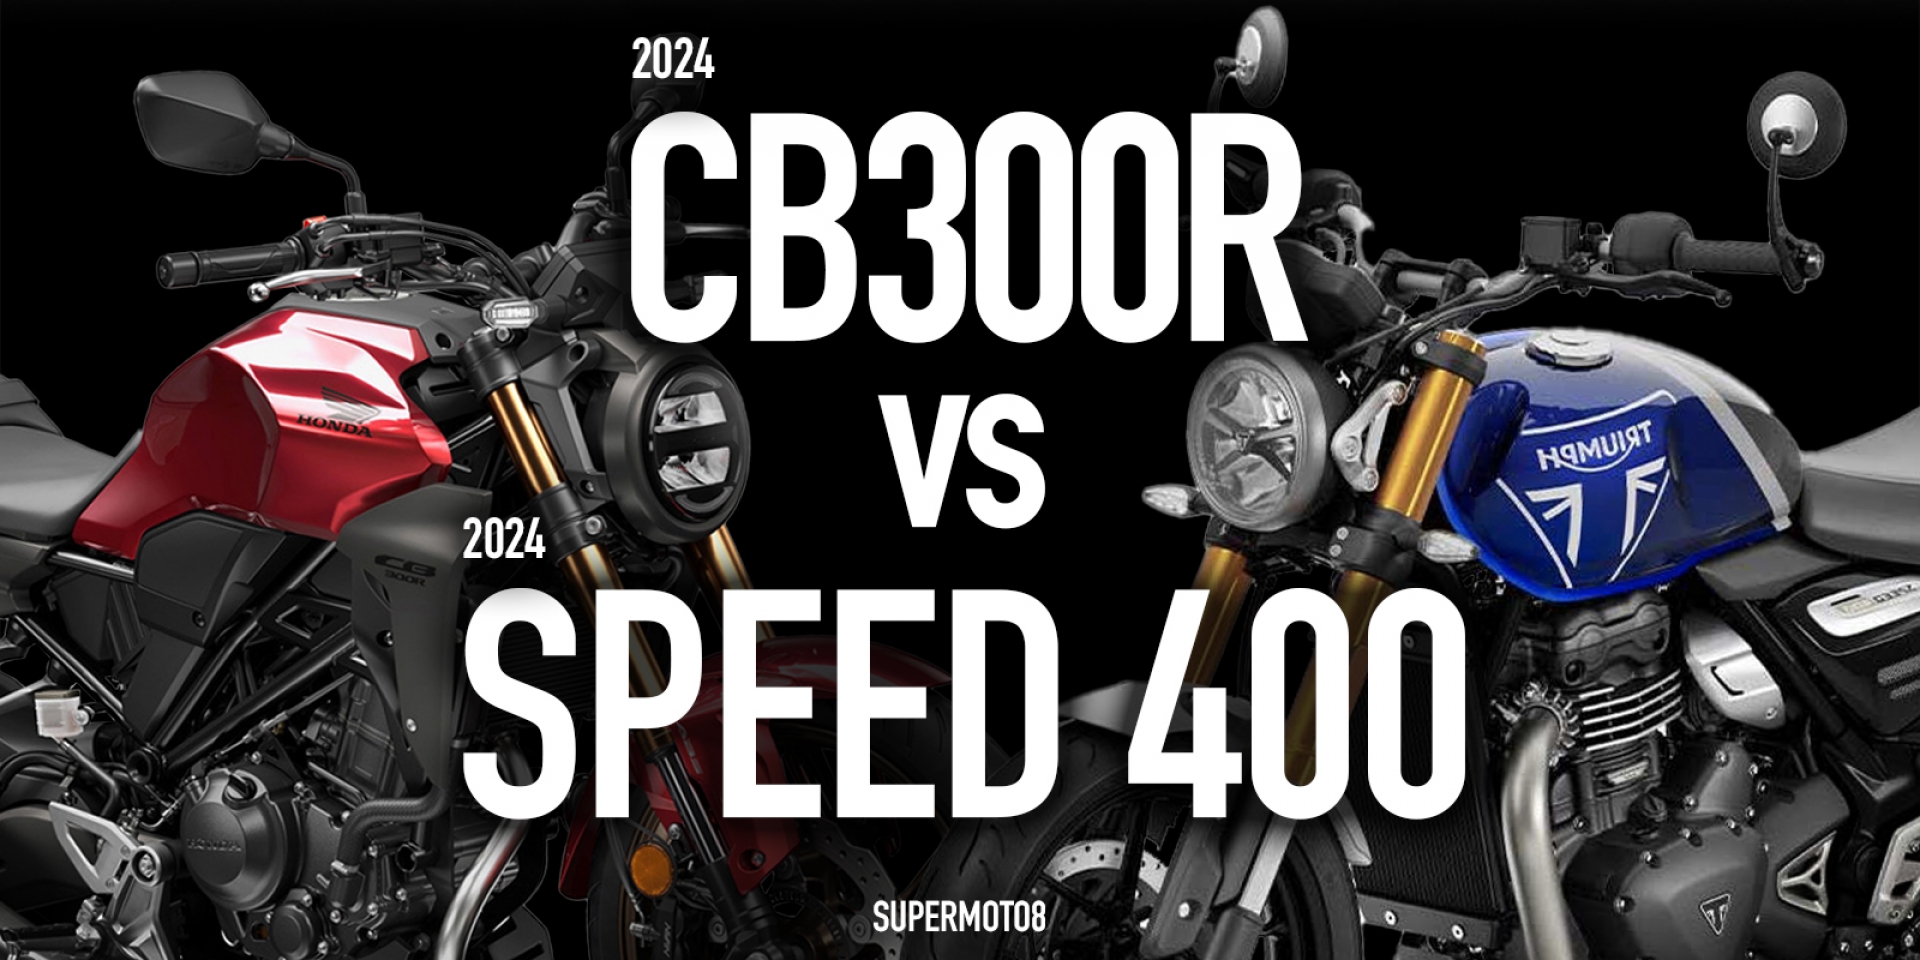 黃牌復古街車之戰。TRIUMPH SPEED 400 vs HONDA CB300R紙上PK !